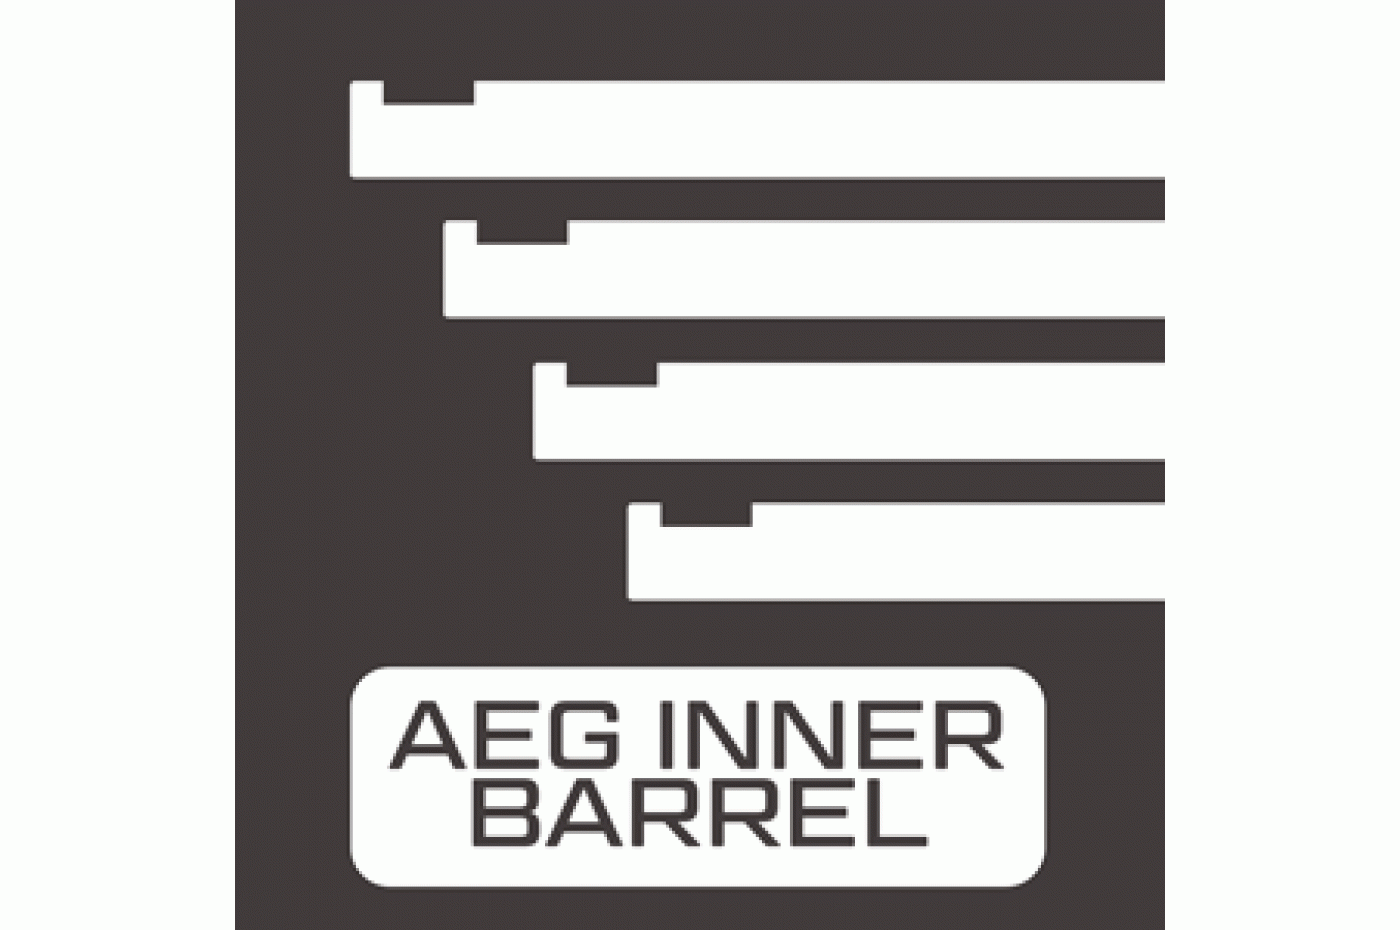 AEG Inner Barrels